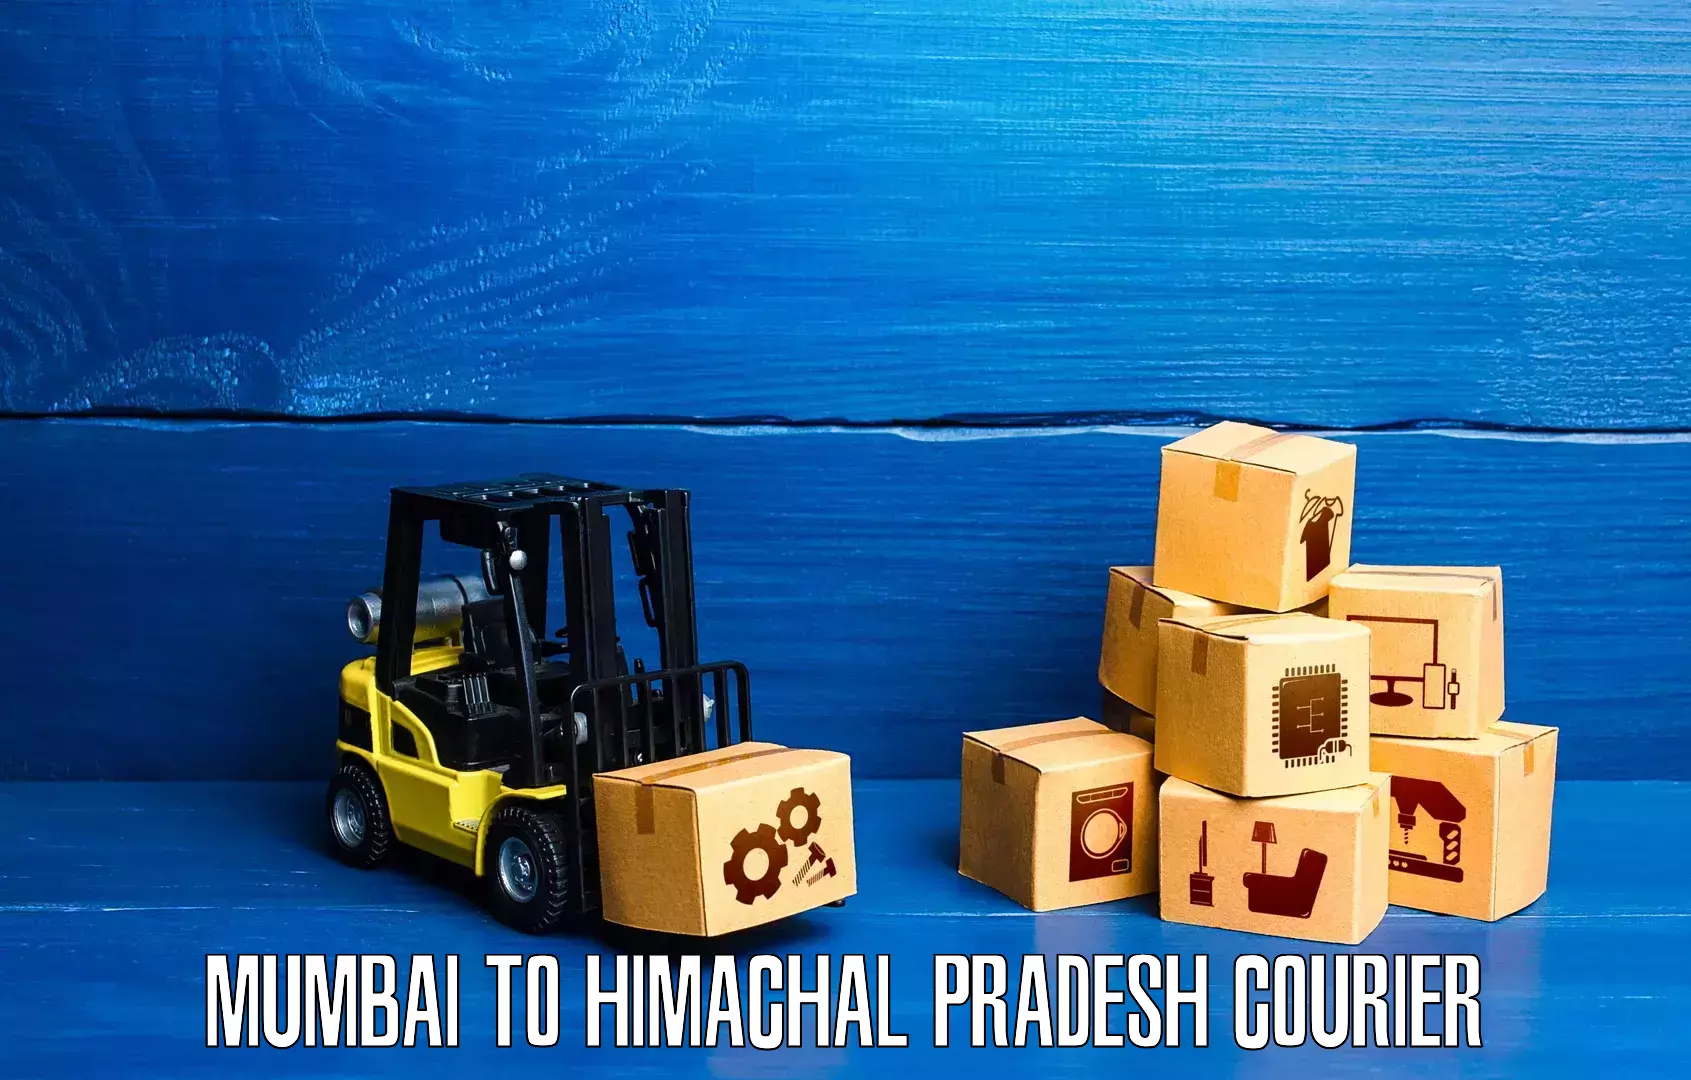 24-hour courier service Mumbai to Himachal Pradesh